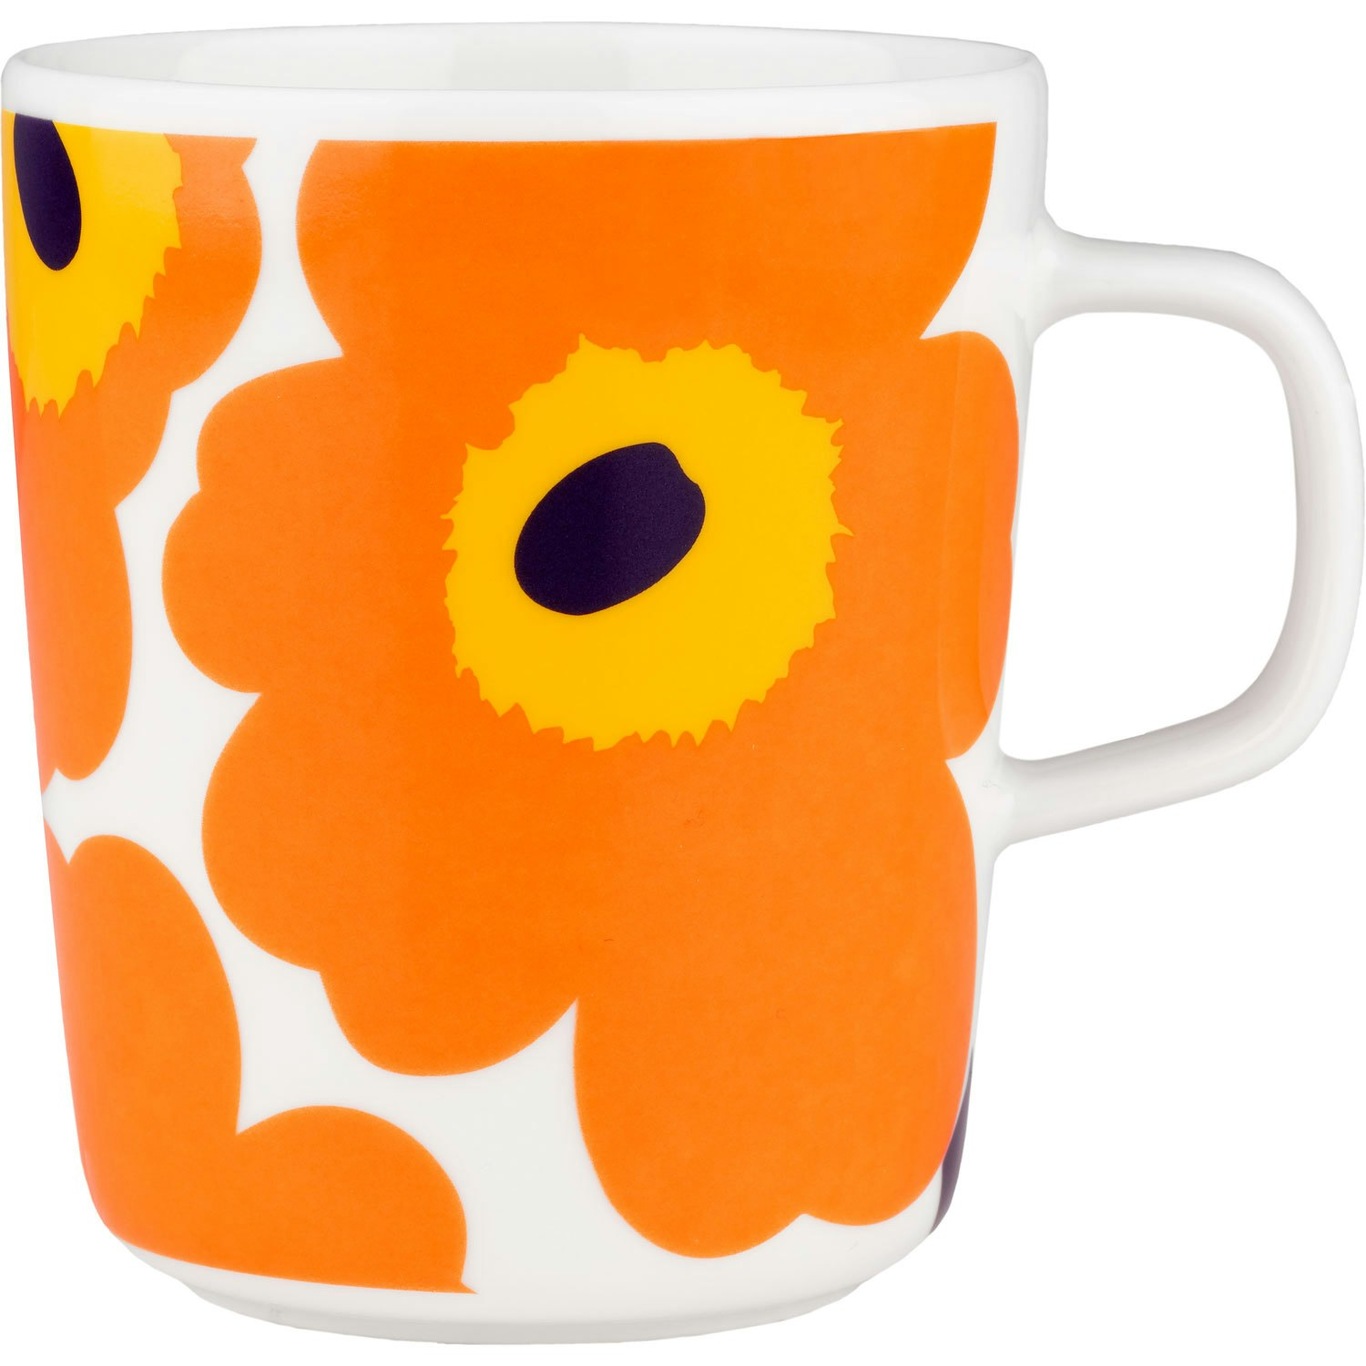 Oiva/Unikko 60Th Anniversary Mug, White / Orange / Yellow